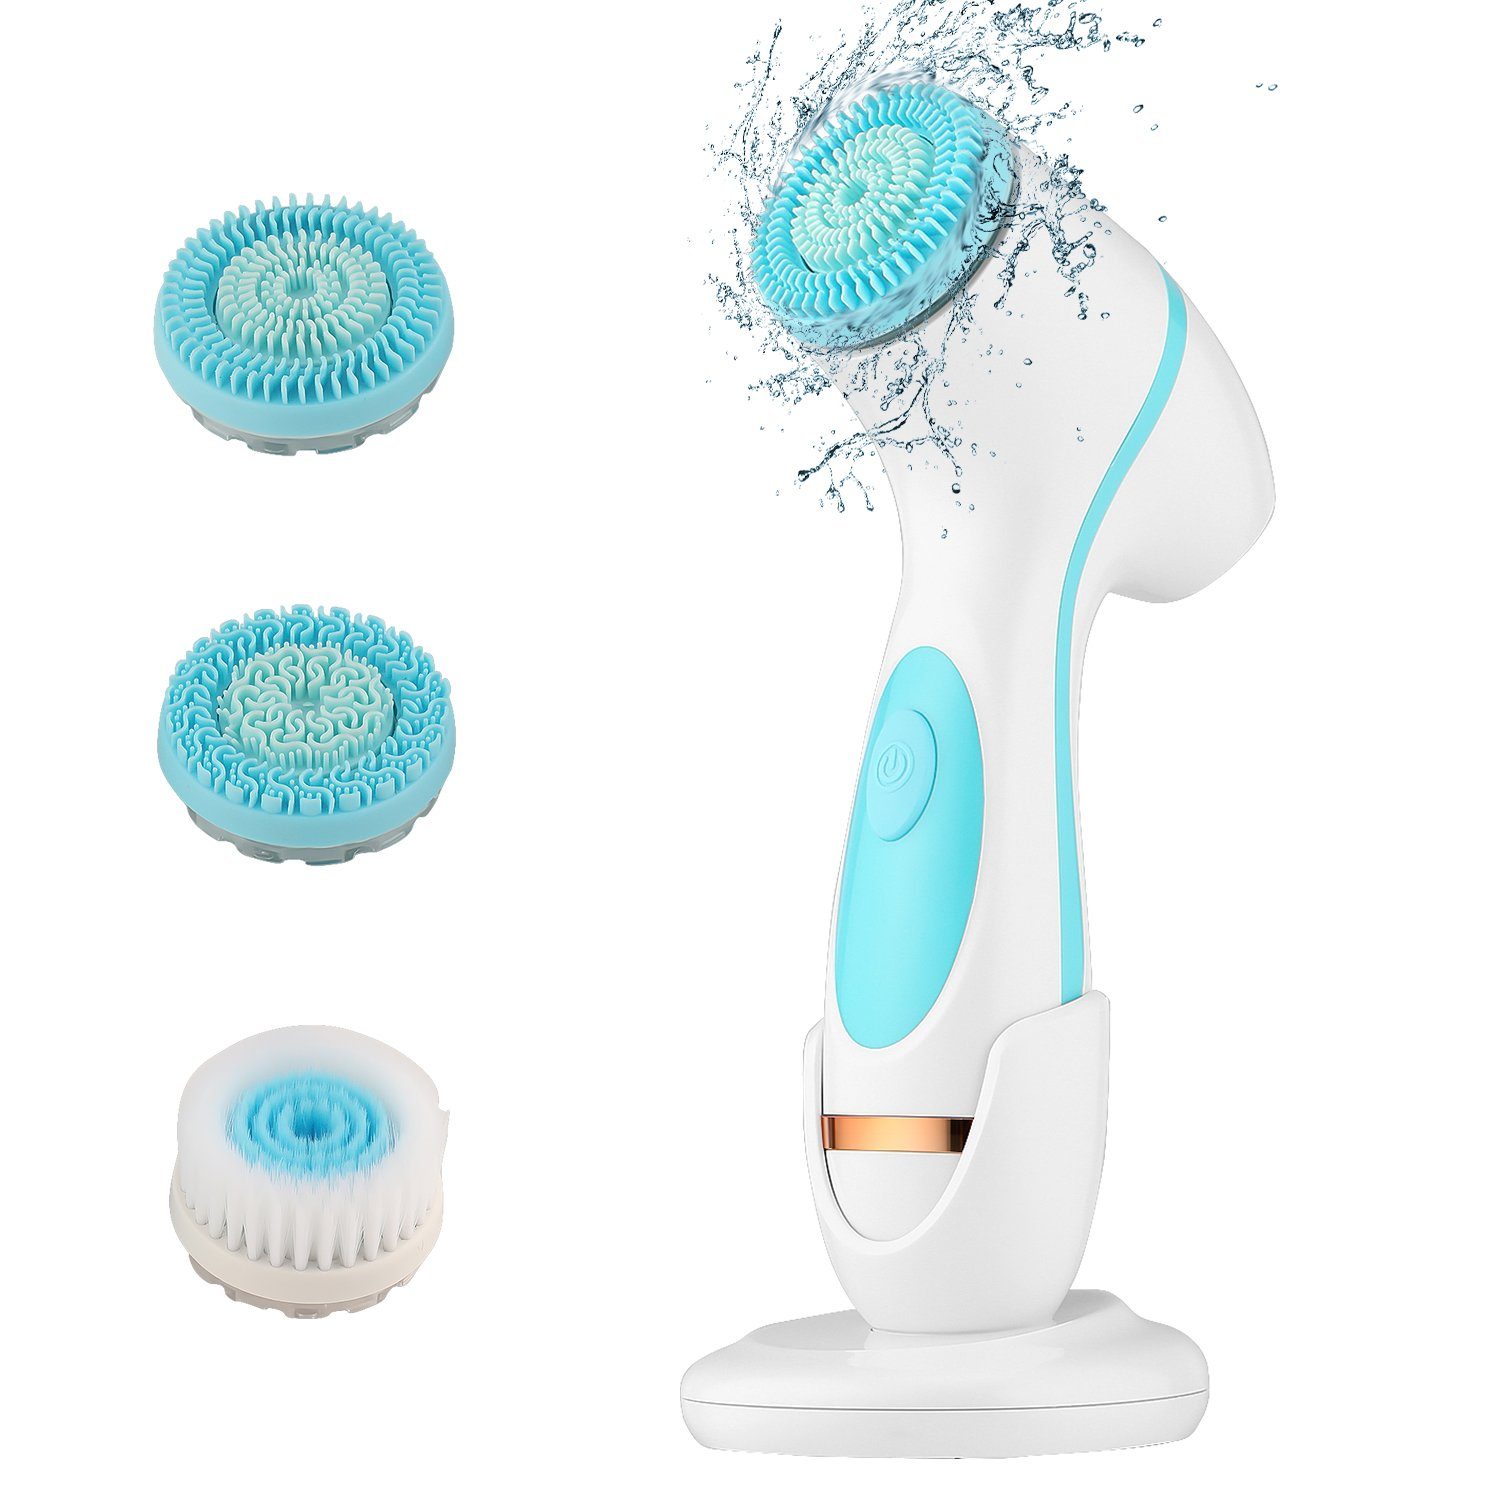 LETGOSPT Elektrische Gesichtsreinigungsbürste Elektrischer Gesichtsbürste, Mit 3 Bürstenköpfen & 2 Geschwindigkeiten, Wasserfest Reinigungsbürste zur Poren- Peeling- und Mitesser Reinigung